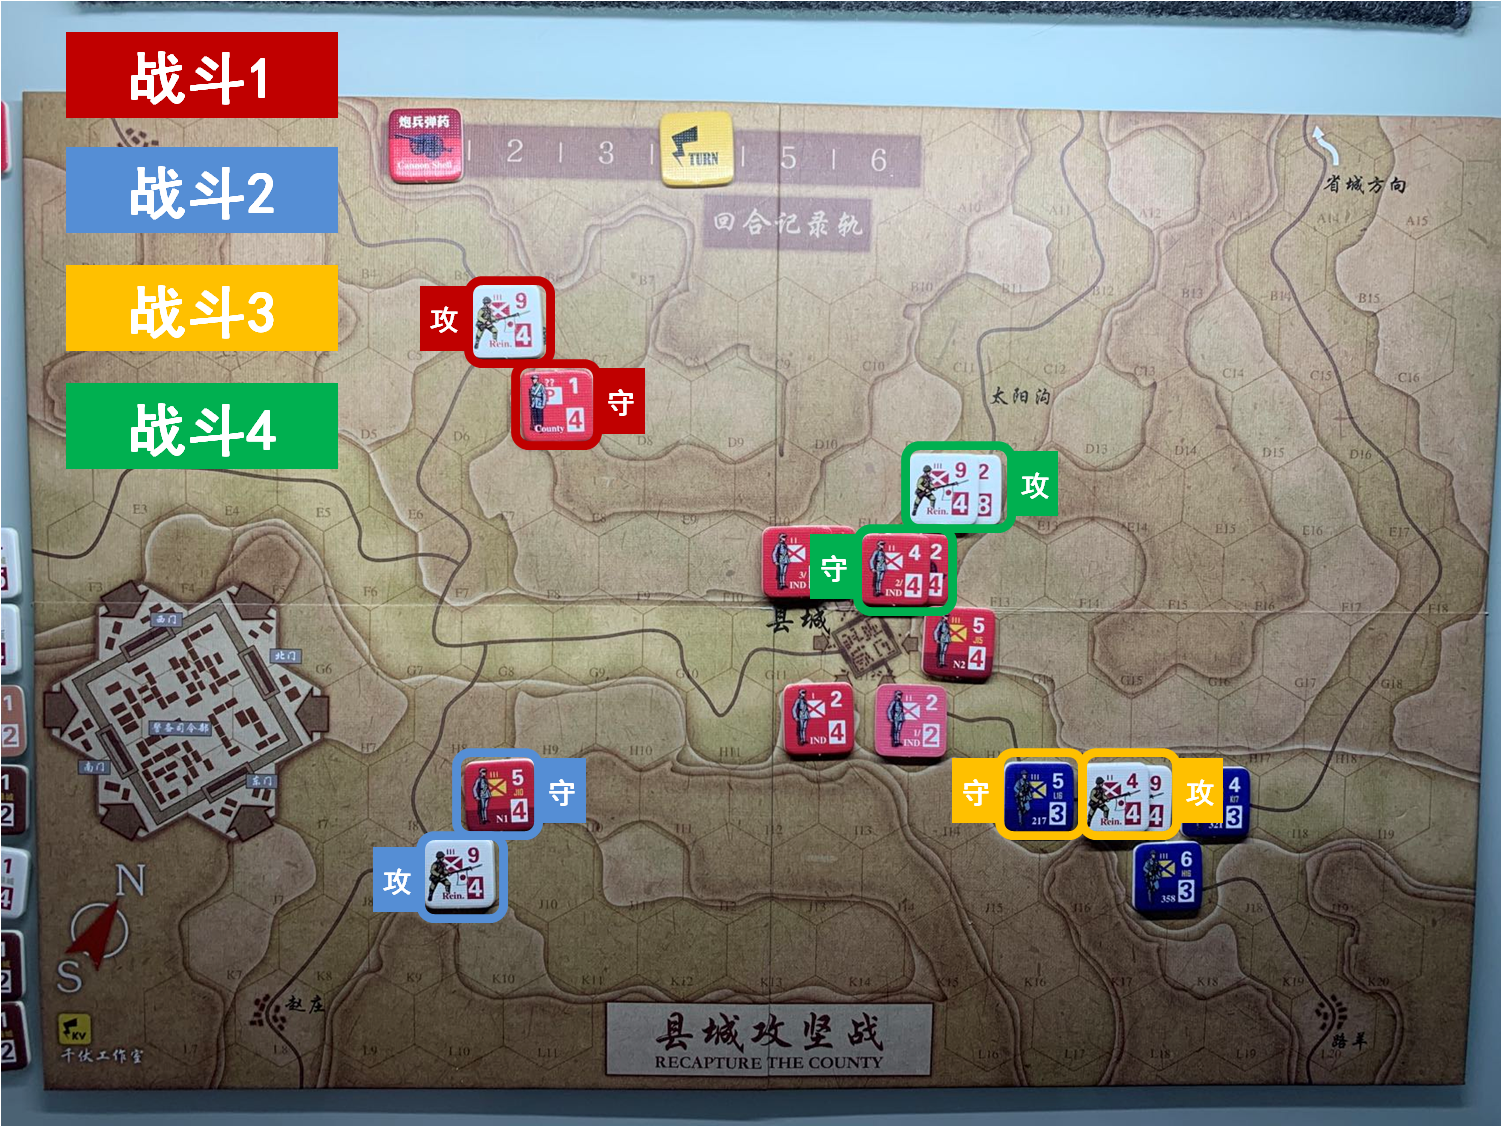 第四回合 日方戰鬥階段 戰鬥計劃